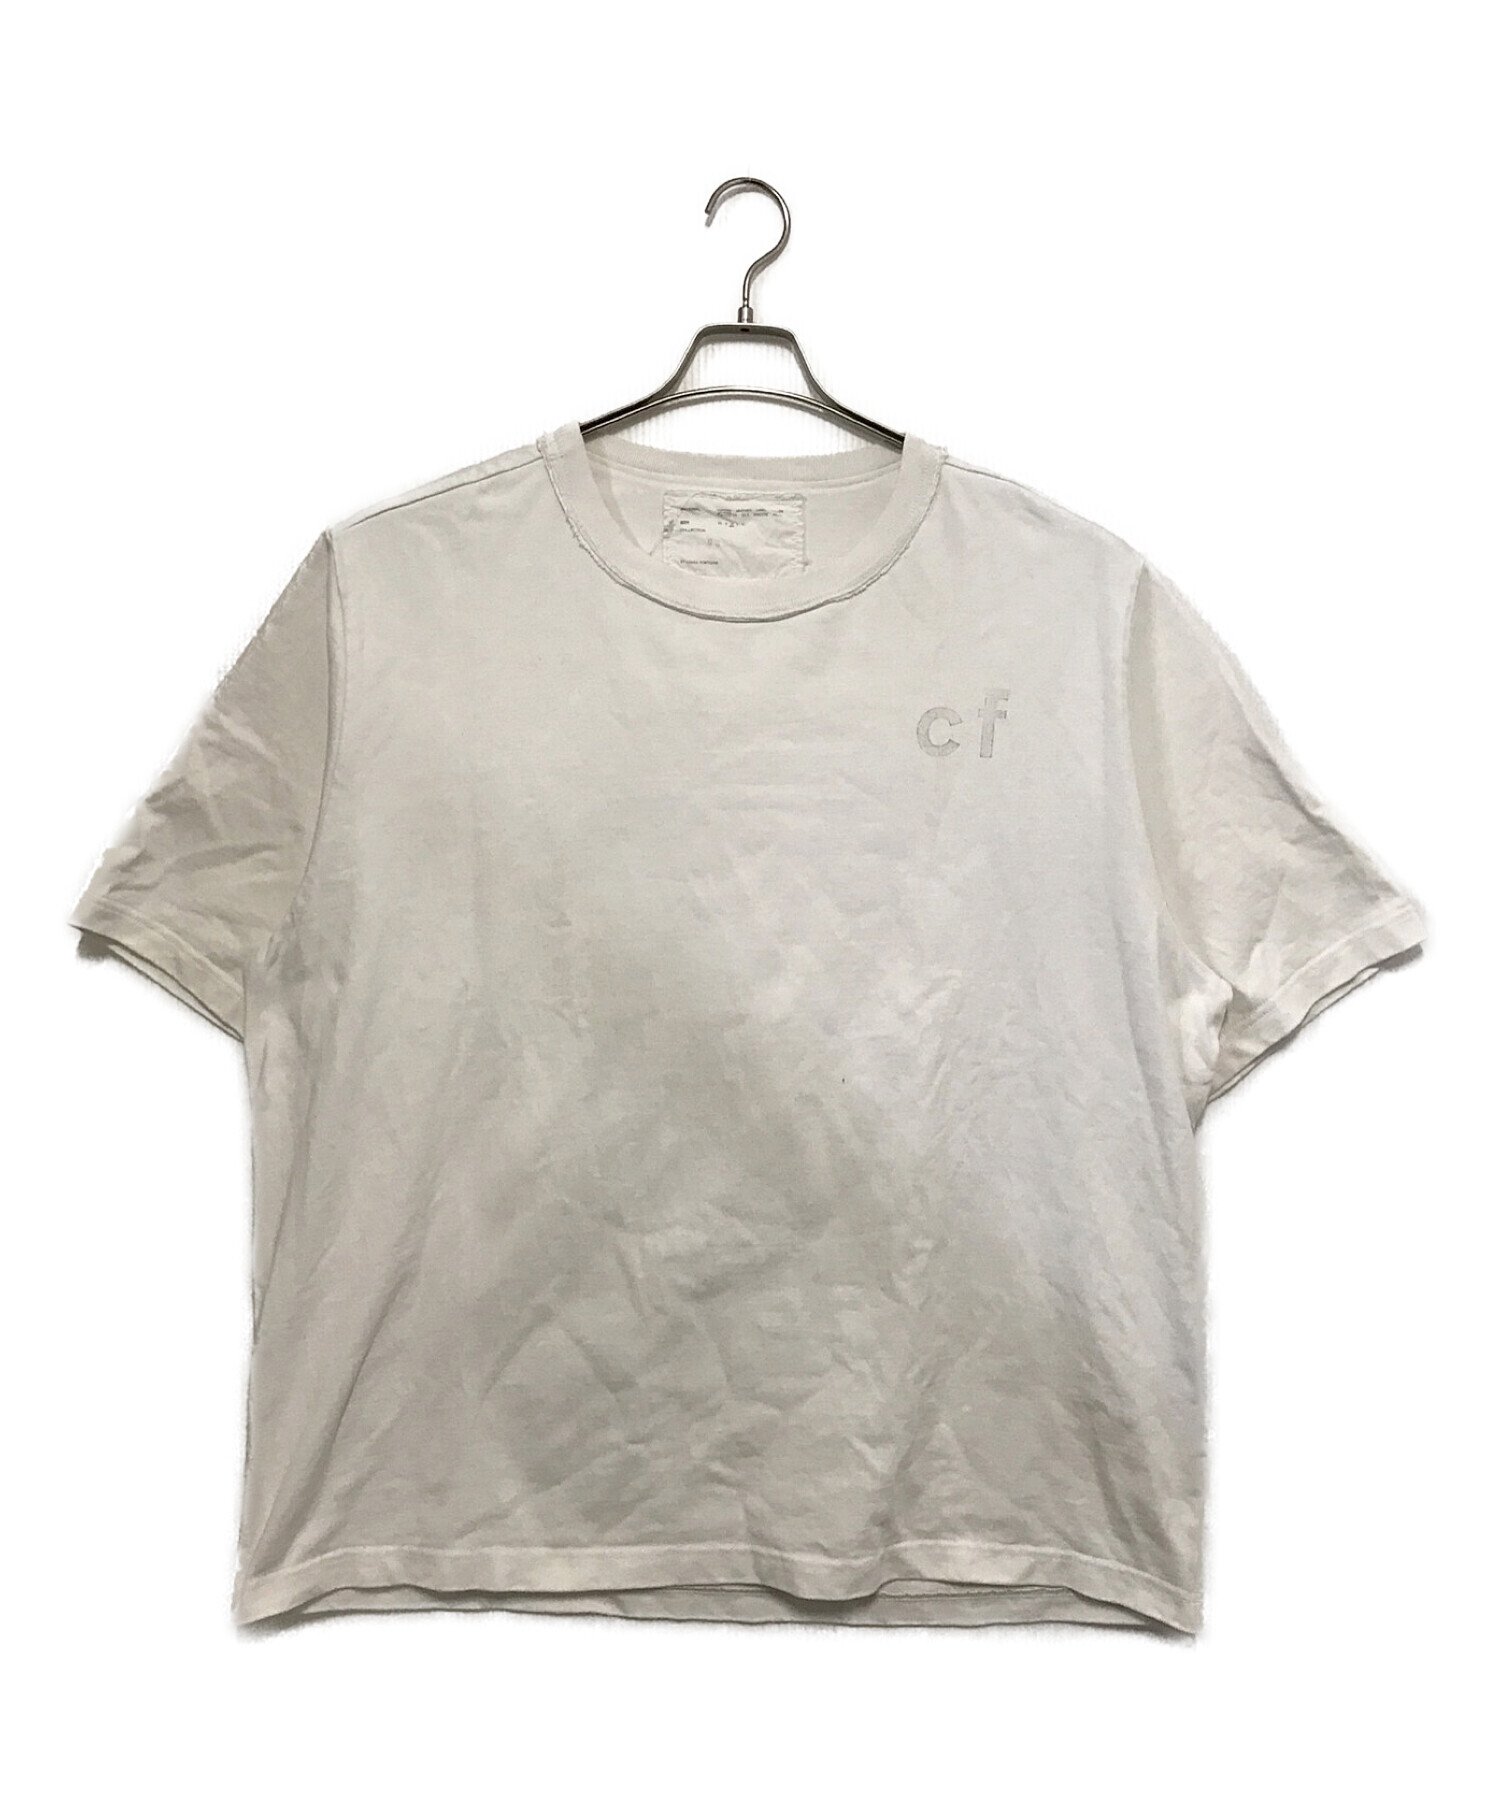 CAMIEL FORTGENS(カミエルフォートヘンス) Tシャツ - Tシャツ 